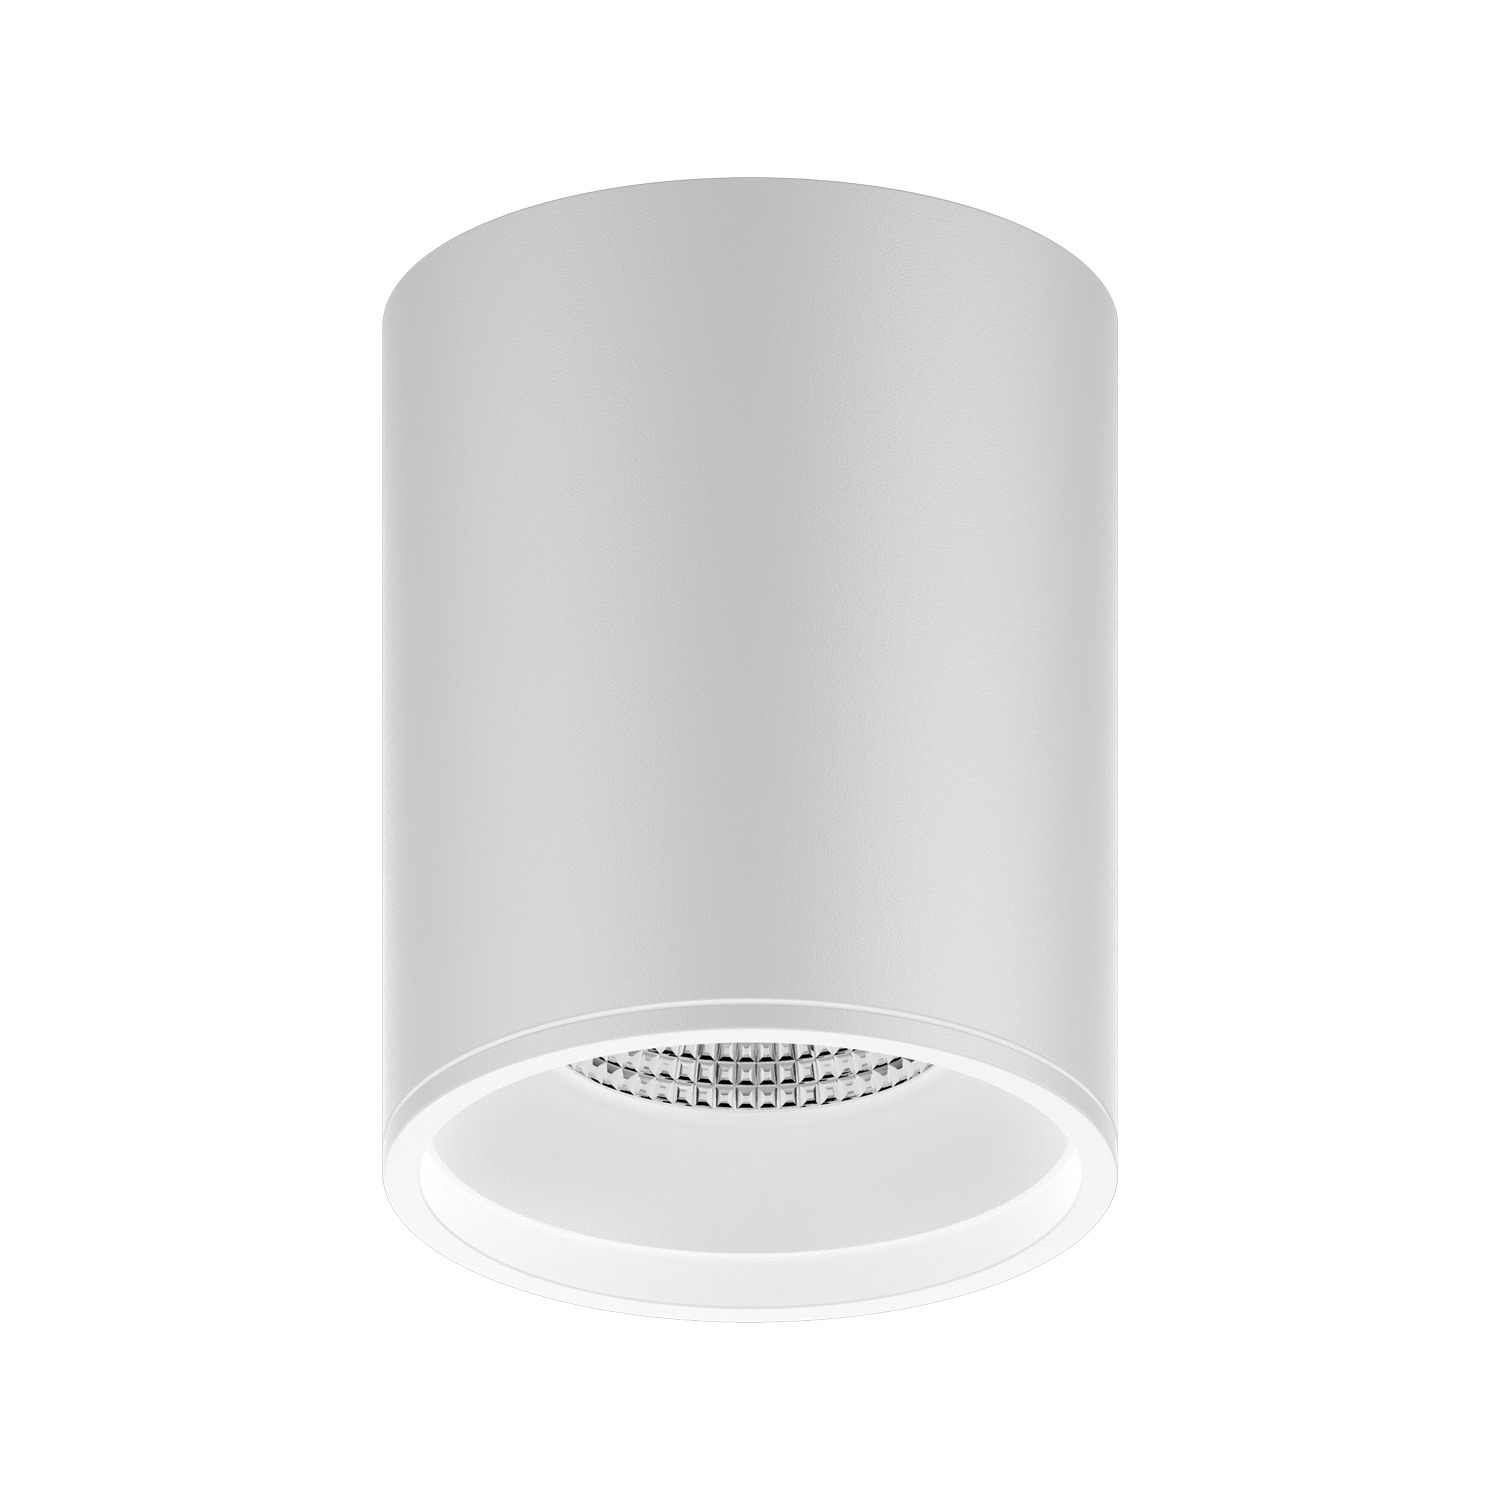 LED светильник накладной HD011 12W (белый) 4100K 79x100,920лм,1/30 - фото 3